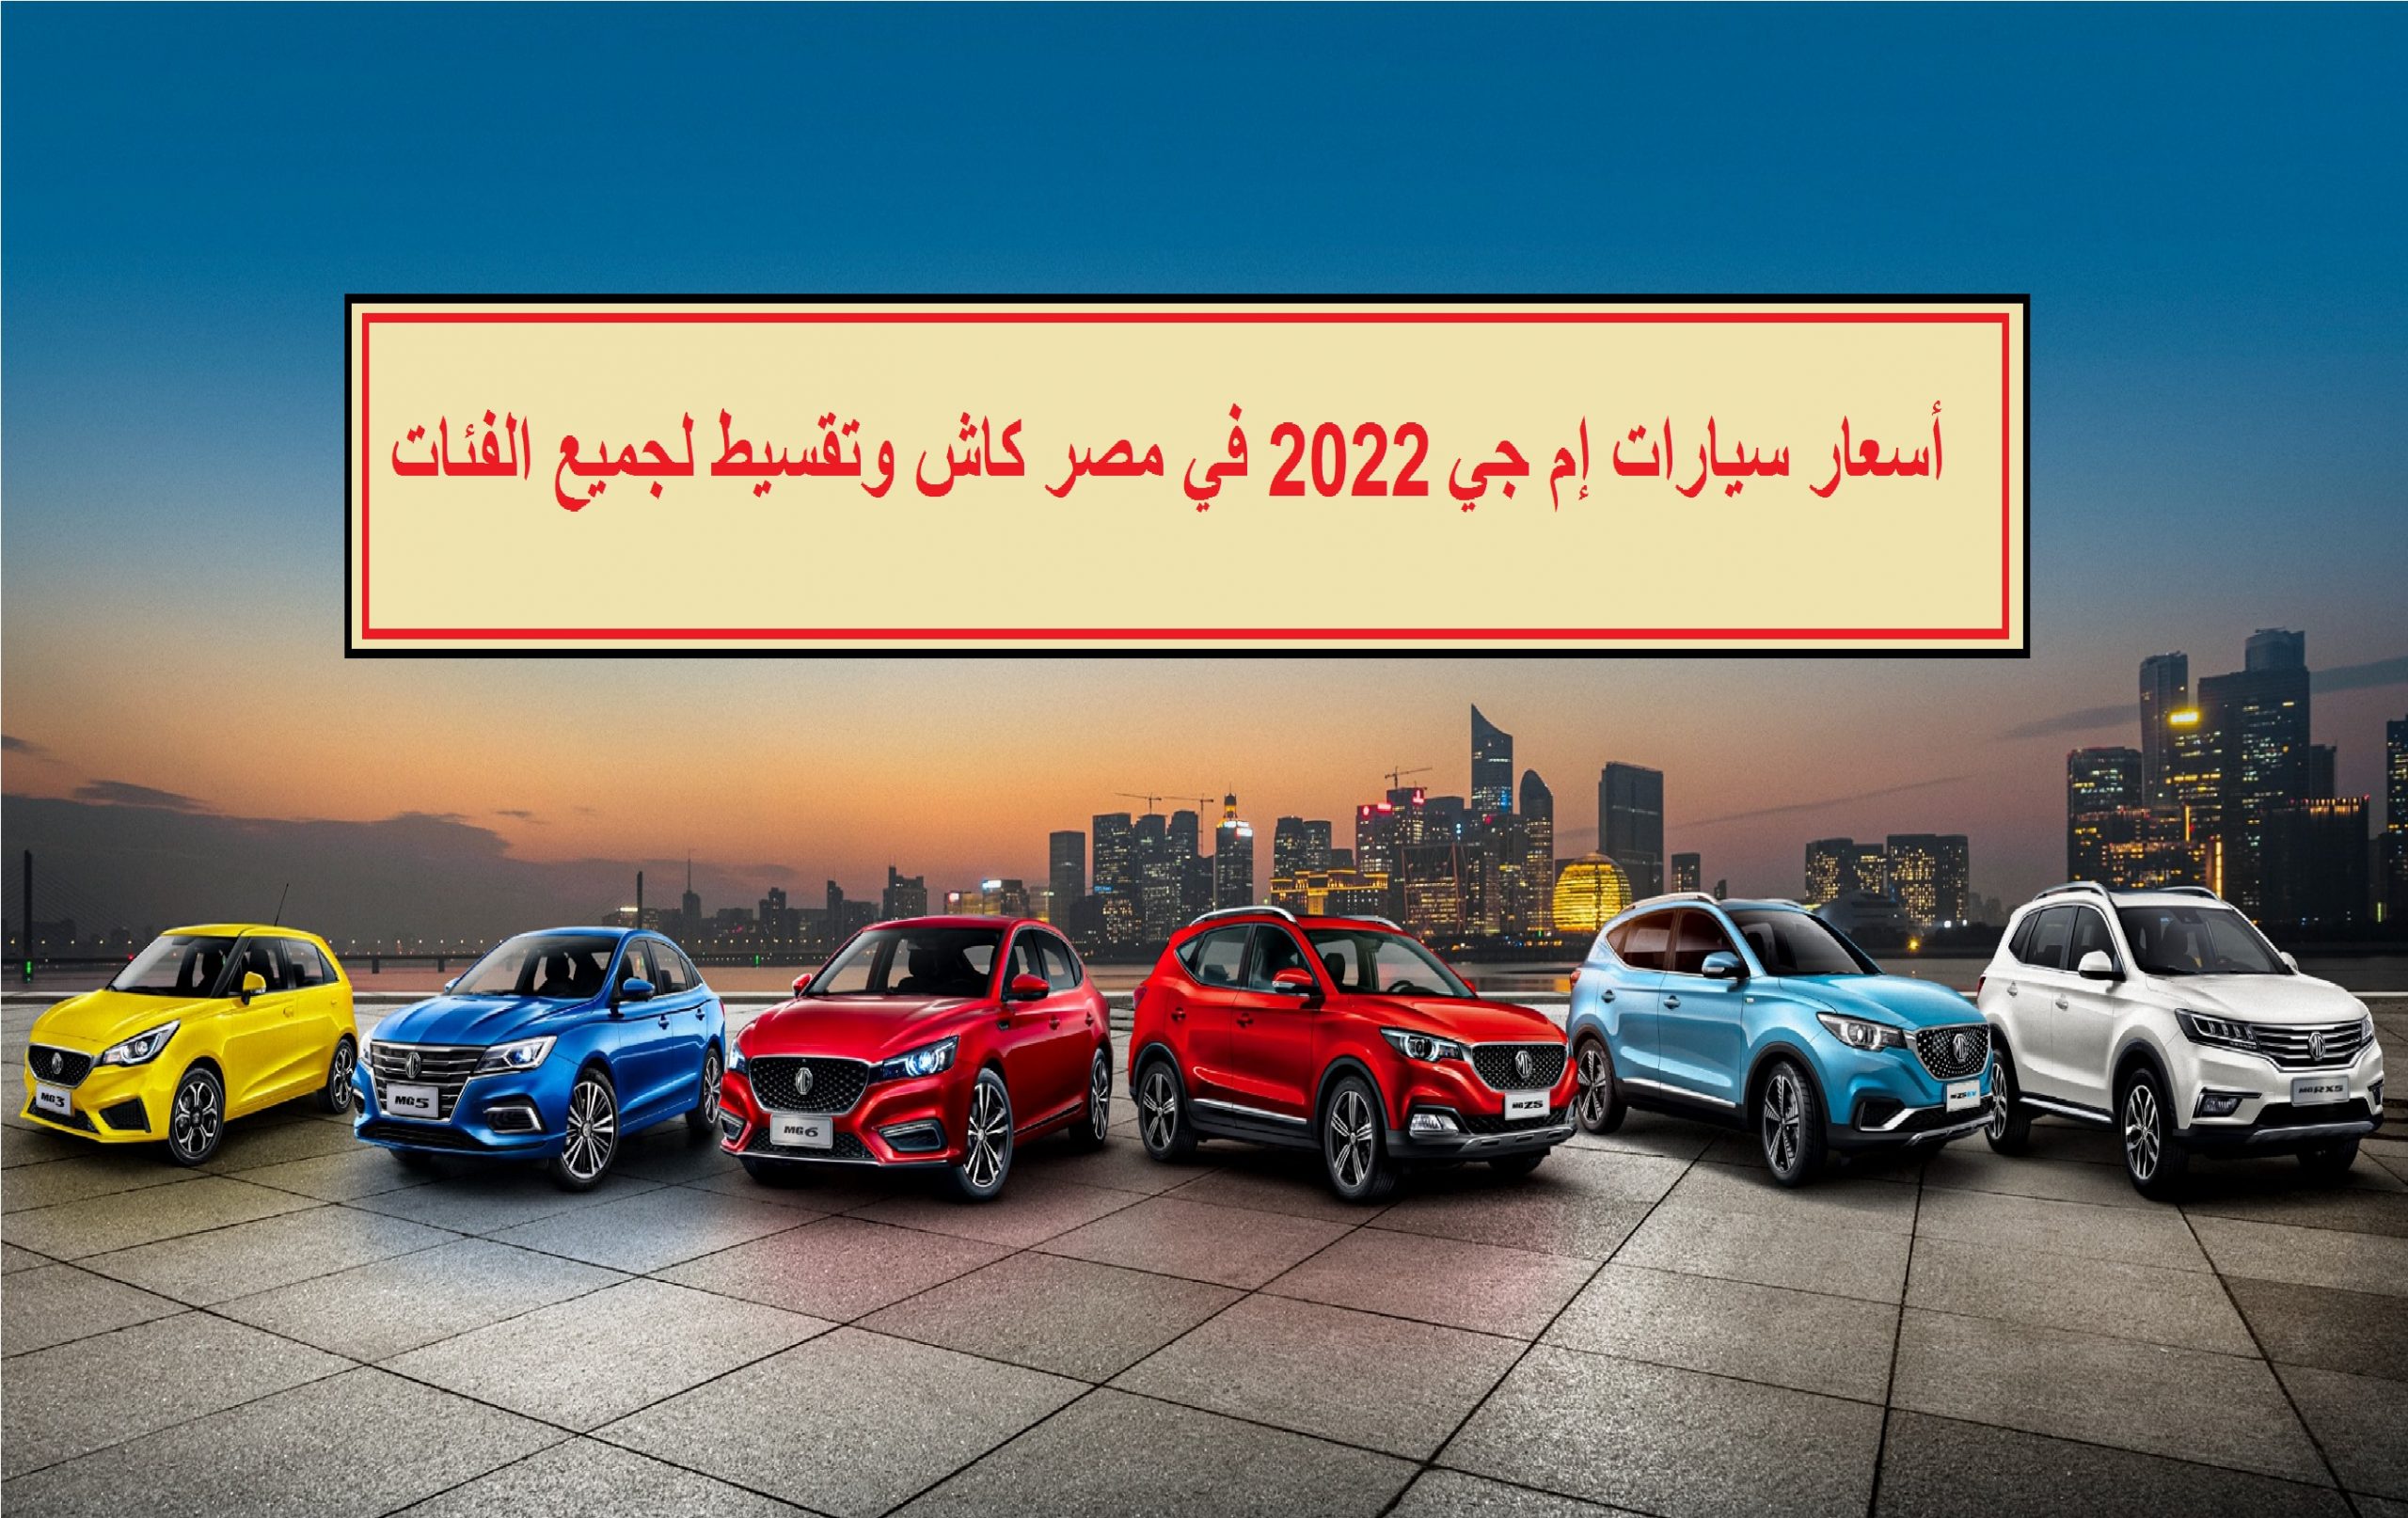 أسعار سيارات إم جي MG 2022 في مصر كاش وتقسيط لجميع الفئات بآخر تحديث مايو 2022